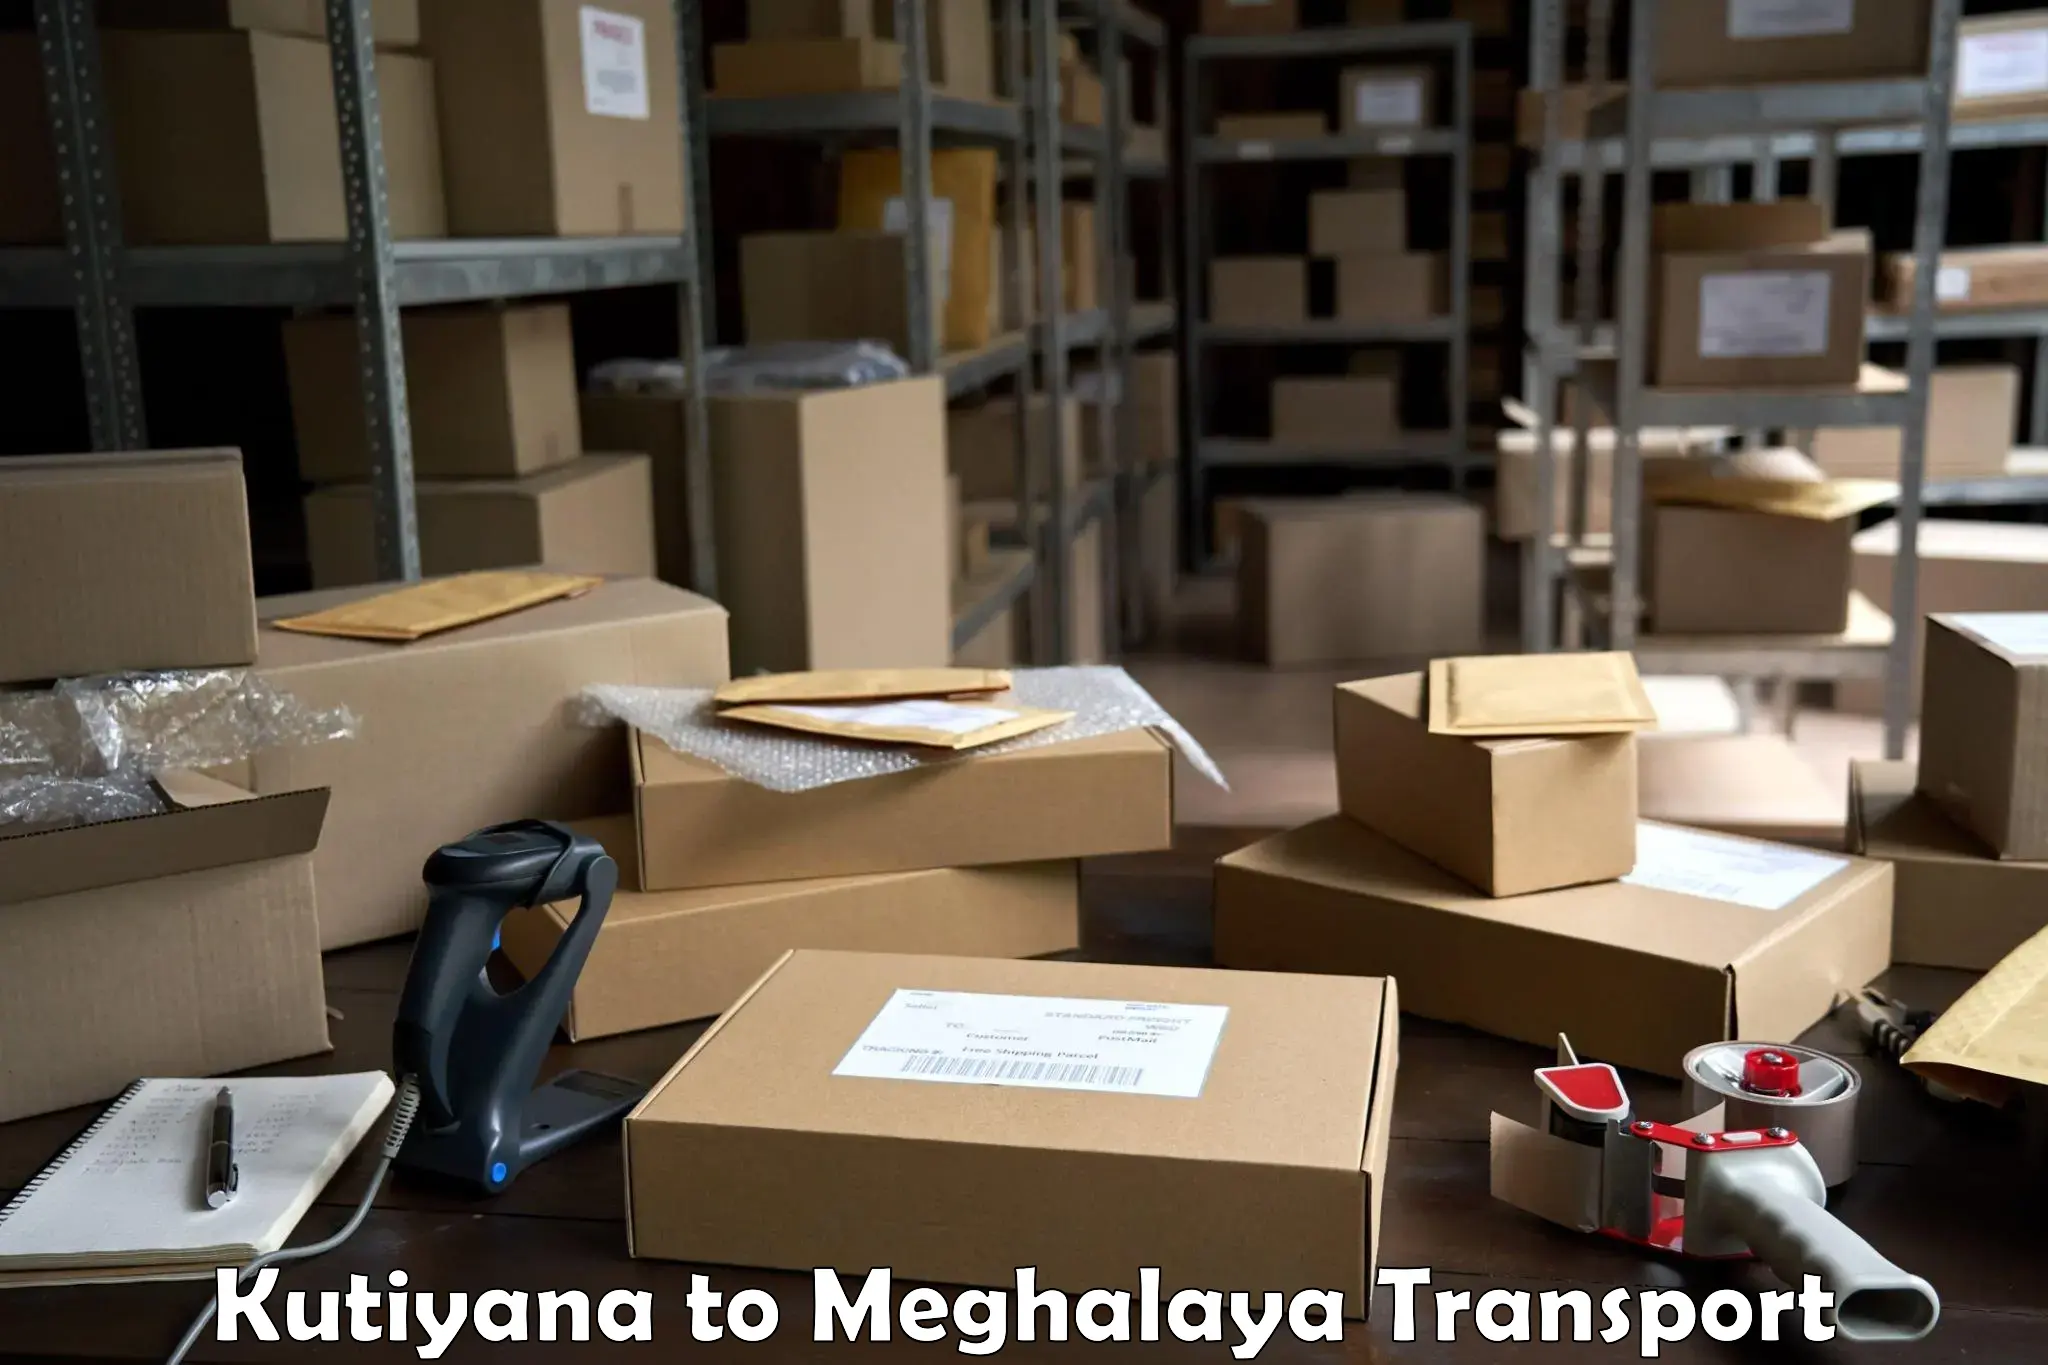 Furniture transport service Kutiyana to Meghalaya